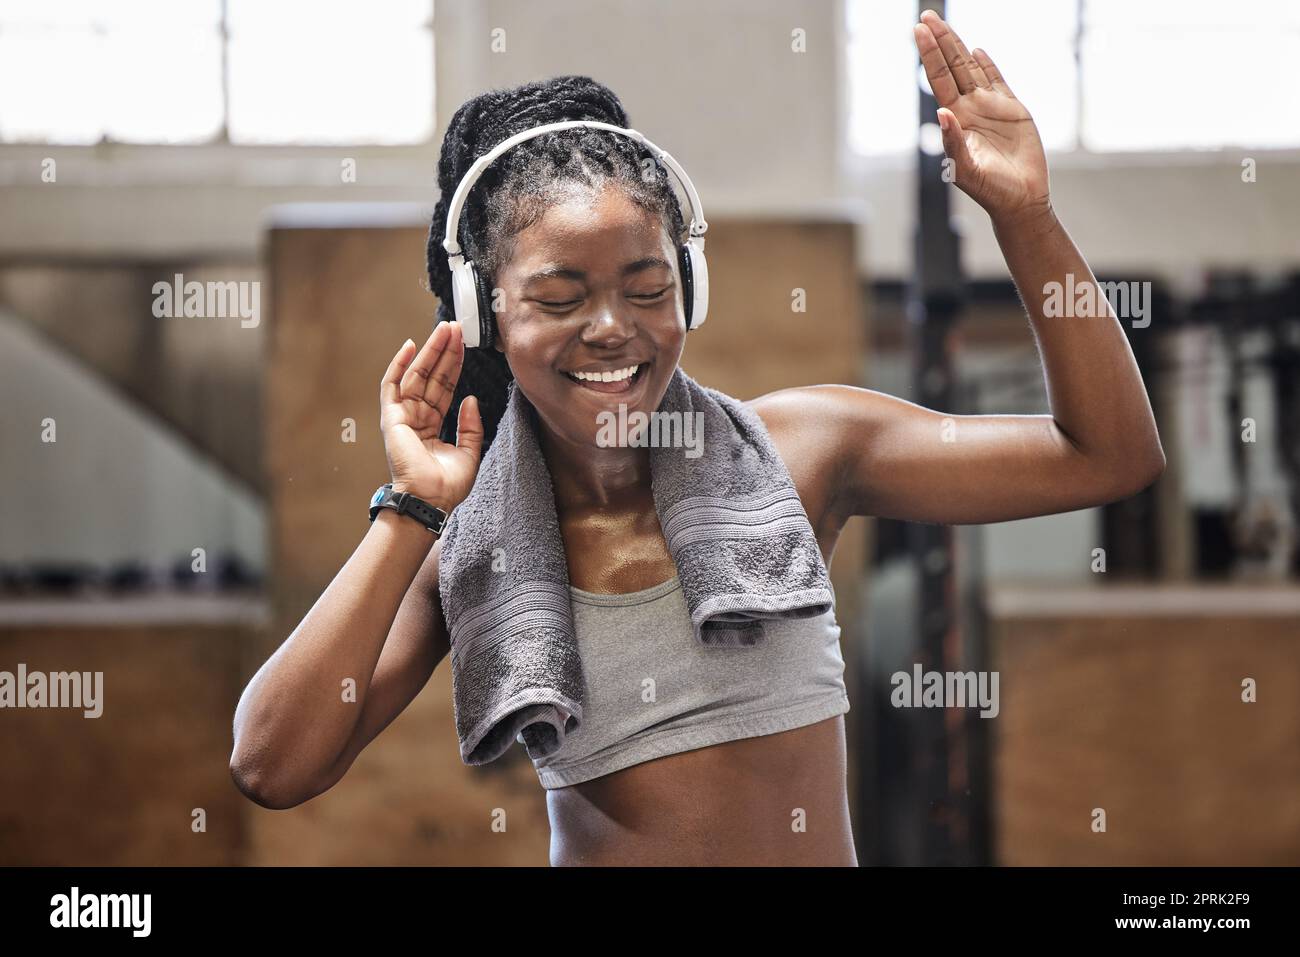 Un athlète heureux chantant et dansant avec un casque dans une salle de sport après la remise en forme, l'exercice et l'entraînement. Femme gaie transpirant s'amuser avec de la musique après la santé et le bien-être cardio-entraînement dans un club sportif Banque D'Images